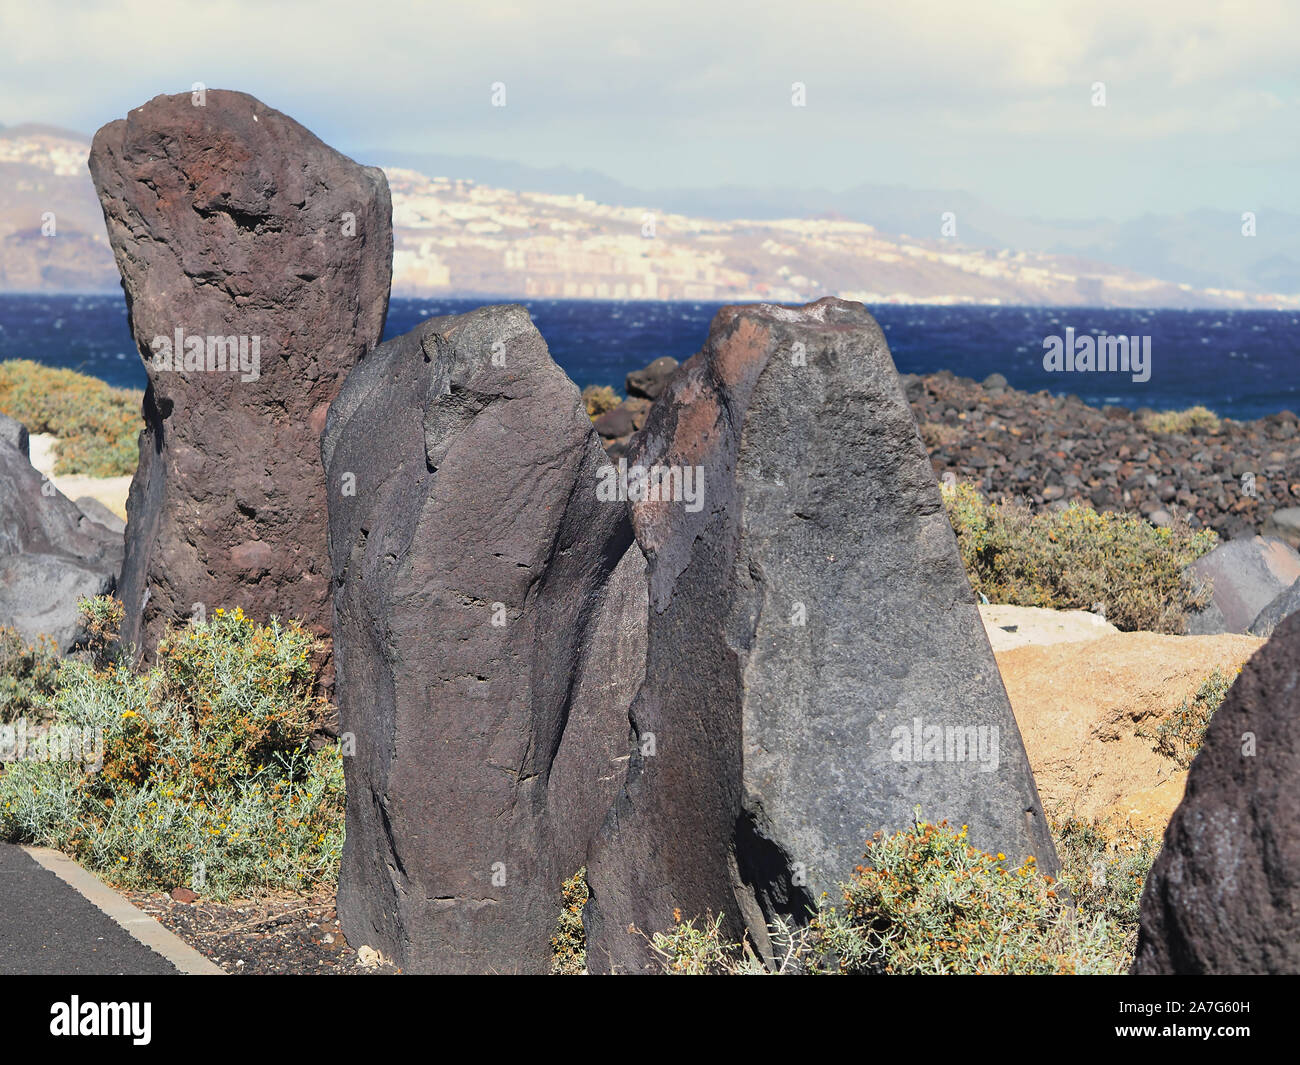 Sehr groß, aufrecht stehend Grau-Lilane lava Steine am Straßenrand neben einander vor der Atlantikküste auf der Insel Teneriffa. In der Ferne die Stockfoto